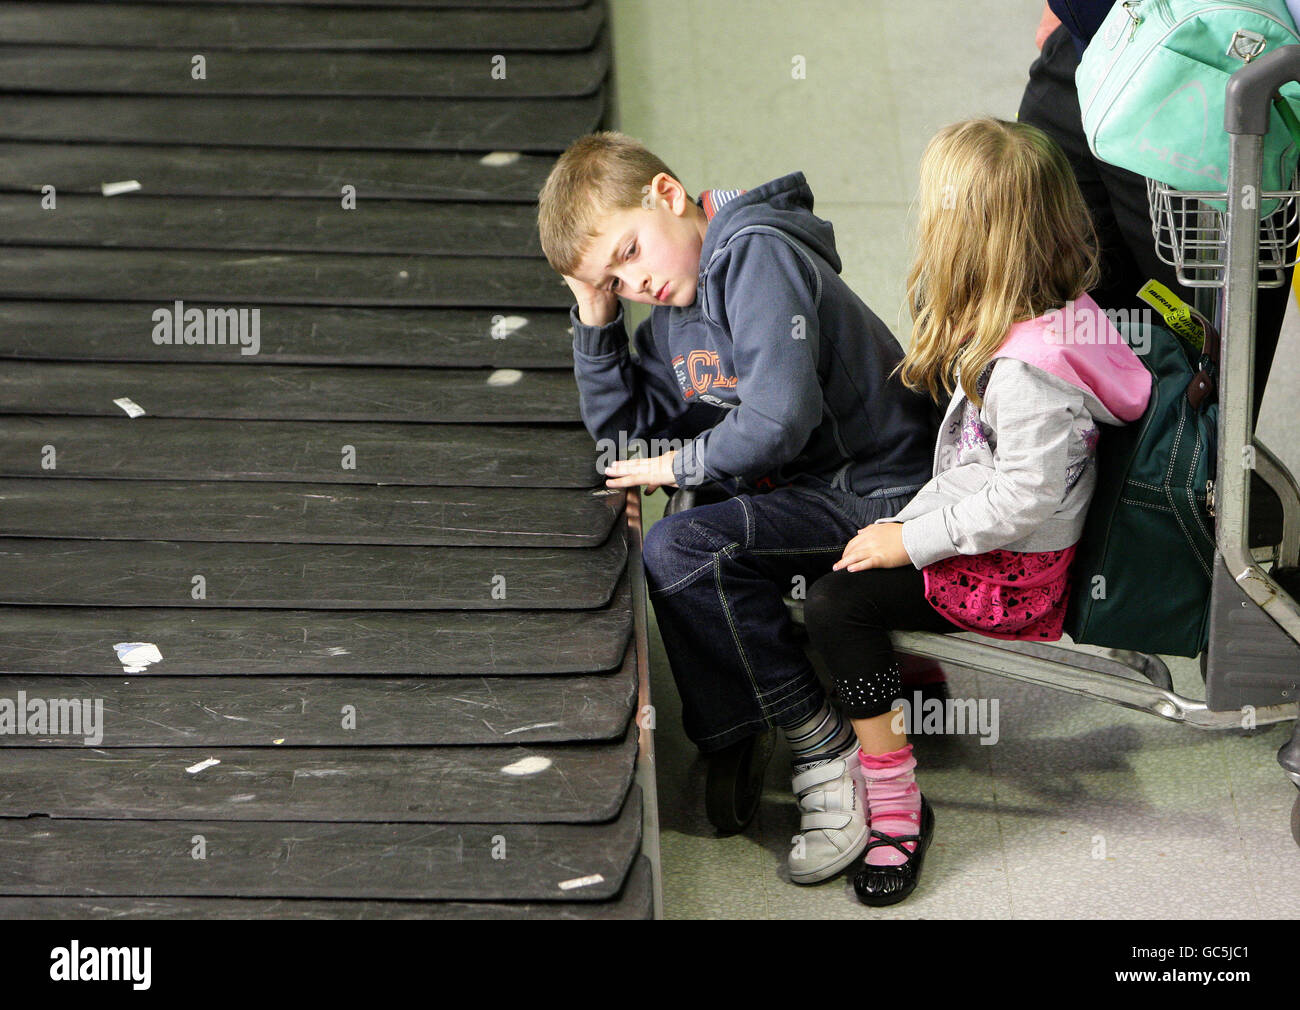 Lager am Flughafen Manchester. Kinder warten auf das Gepäck am Flughafen Manchester, Terminal 2. Stockfoto